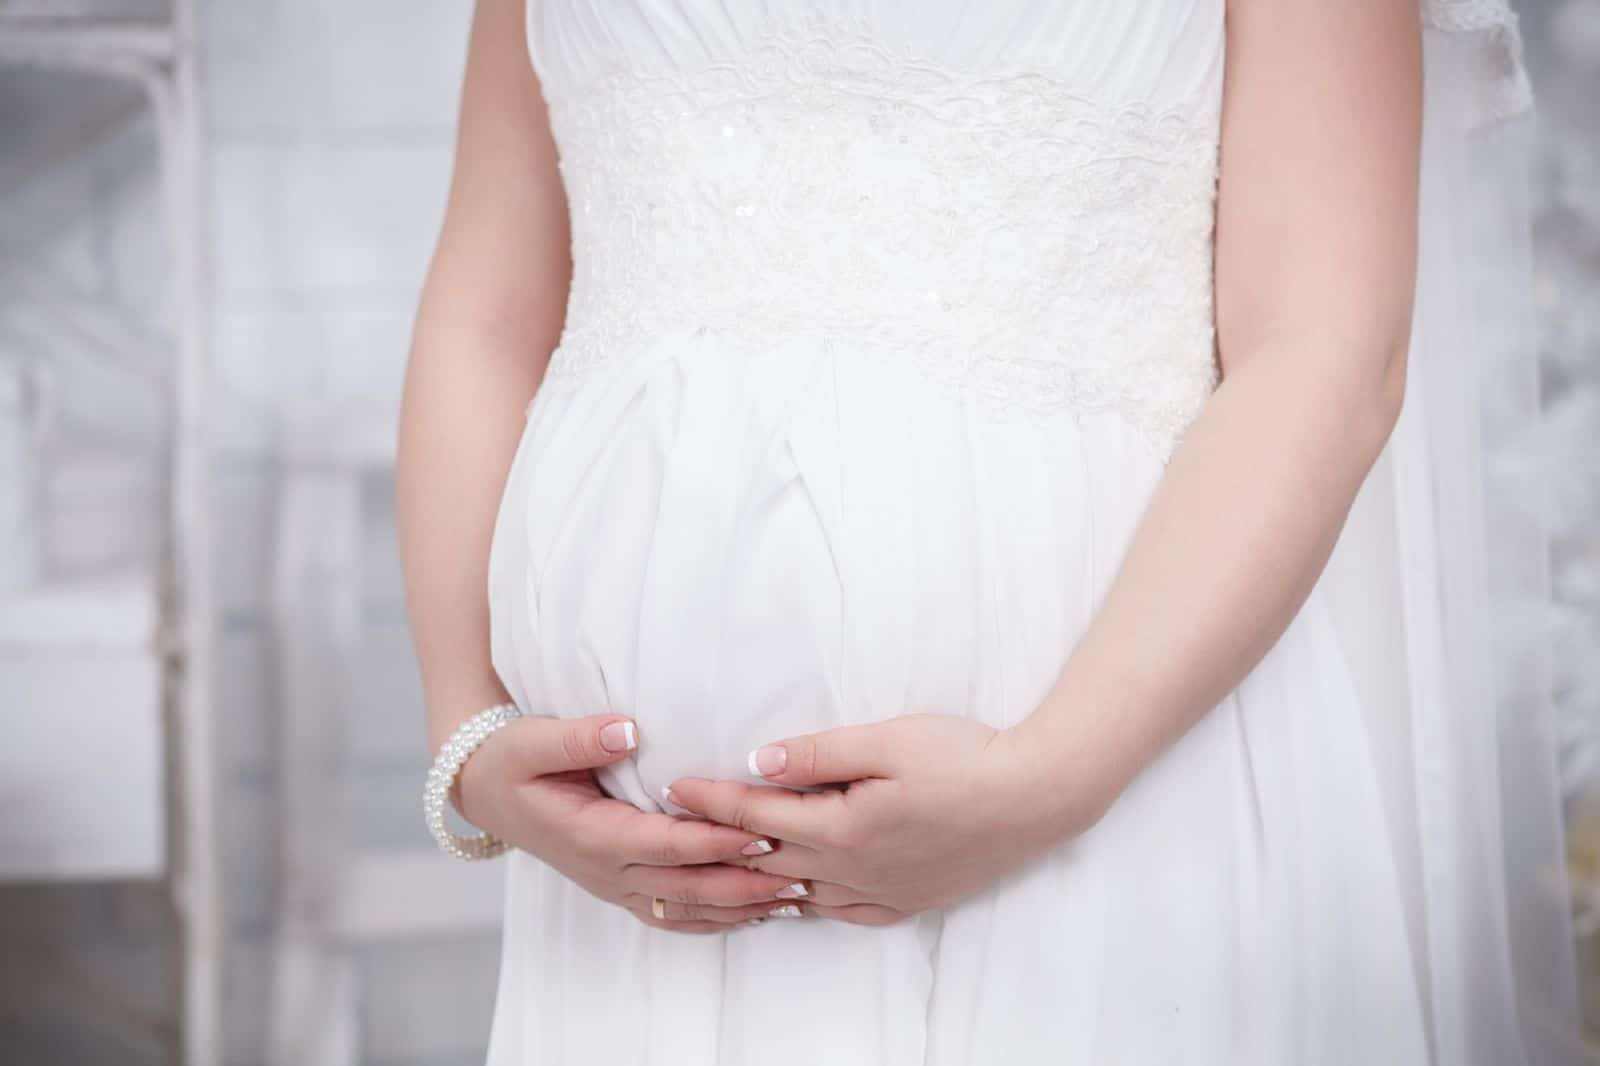 Регистрация брака при беременности — сроки и документы